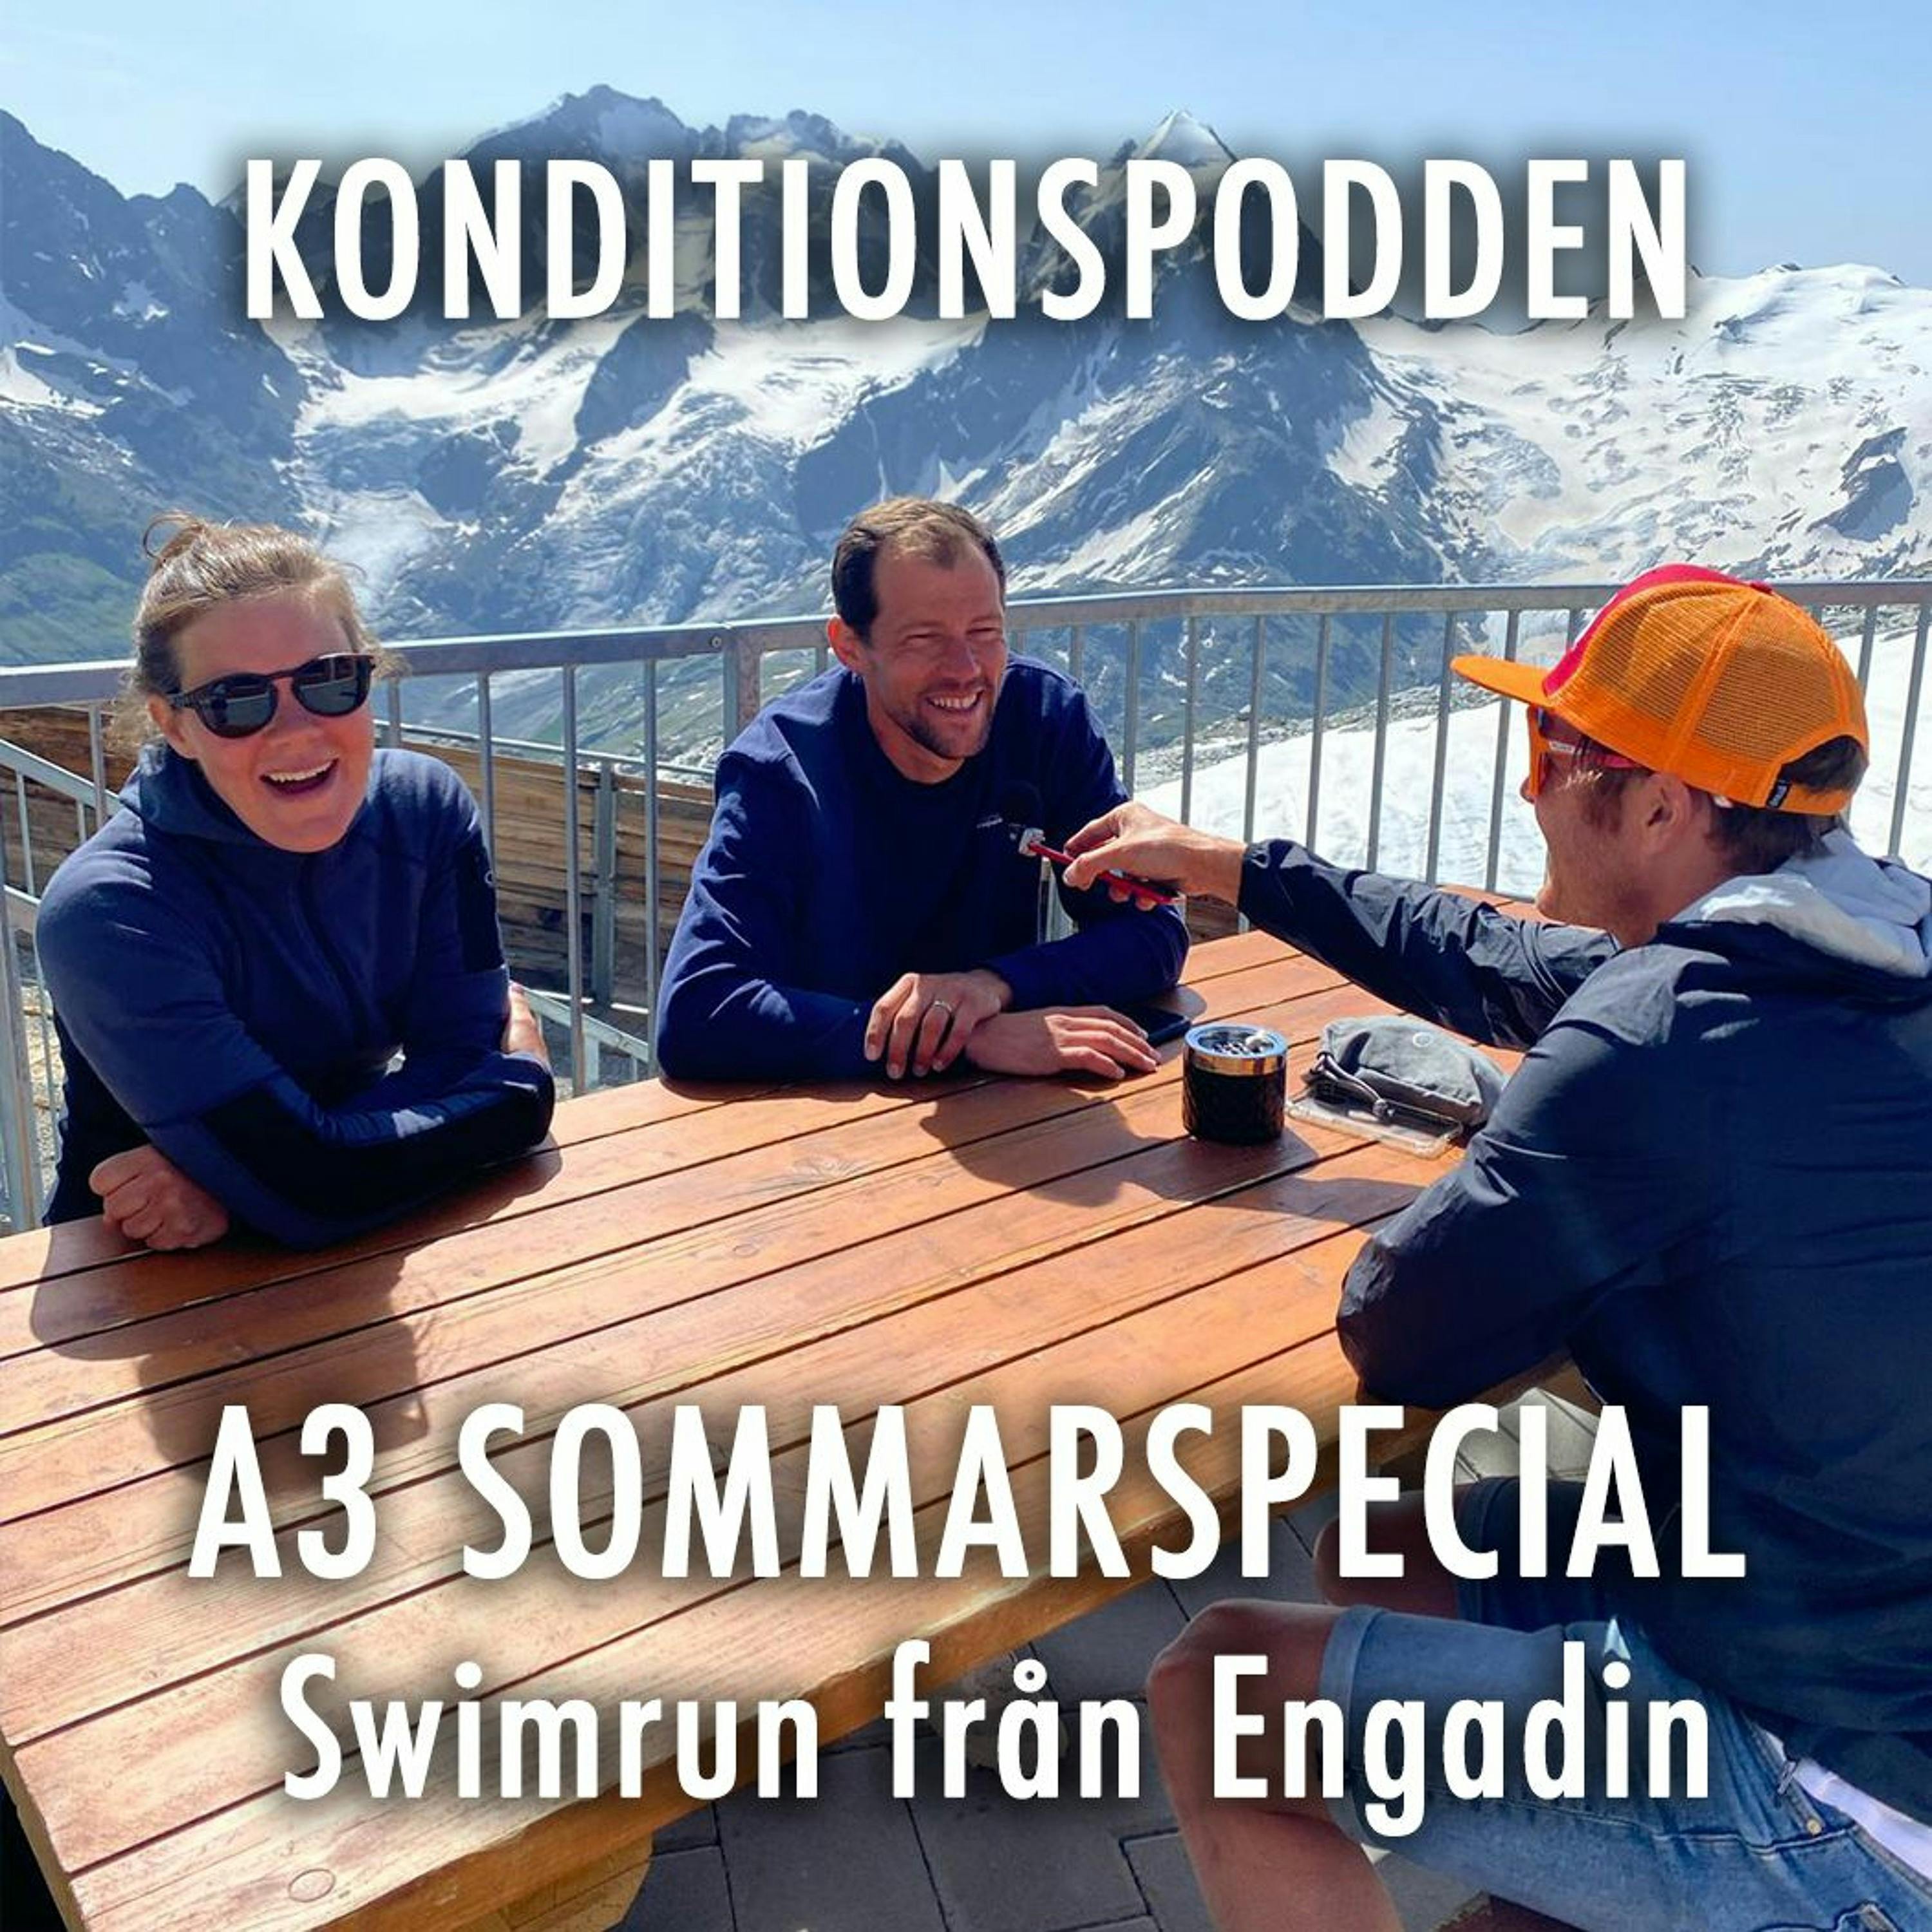 A3 Sommarspecial - Swimrun från Engadin